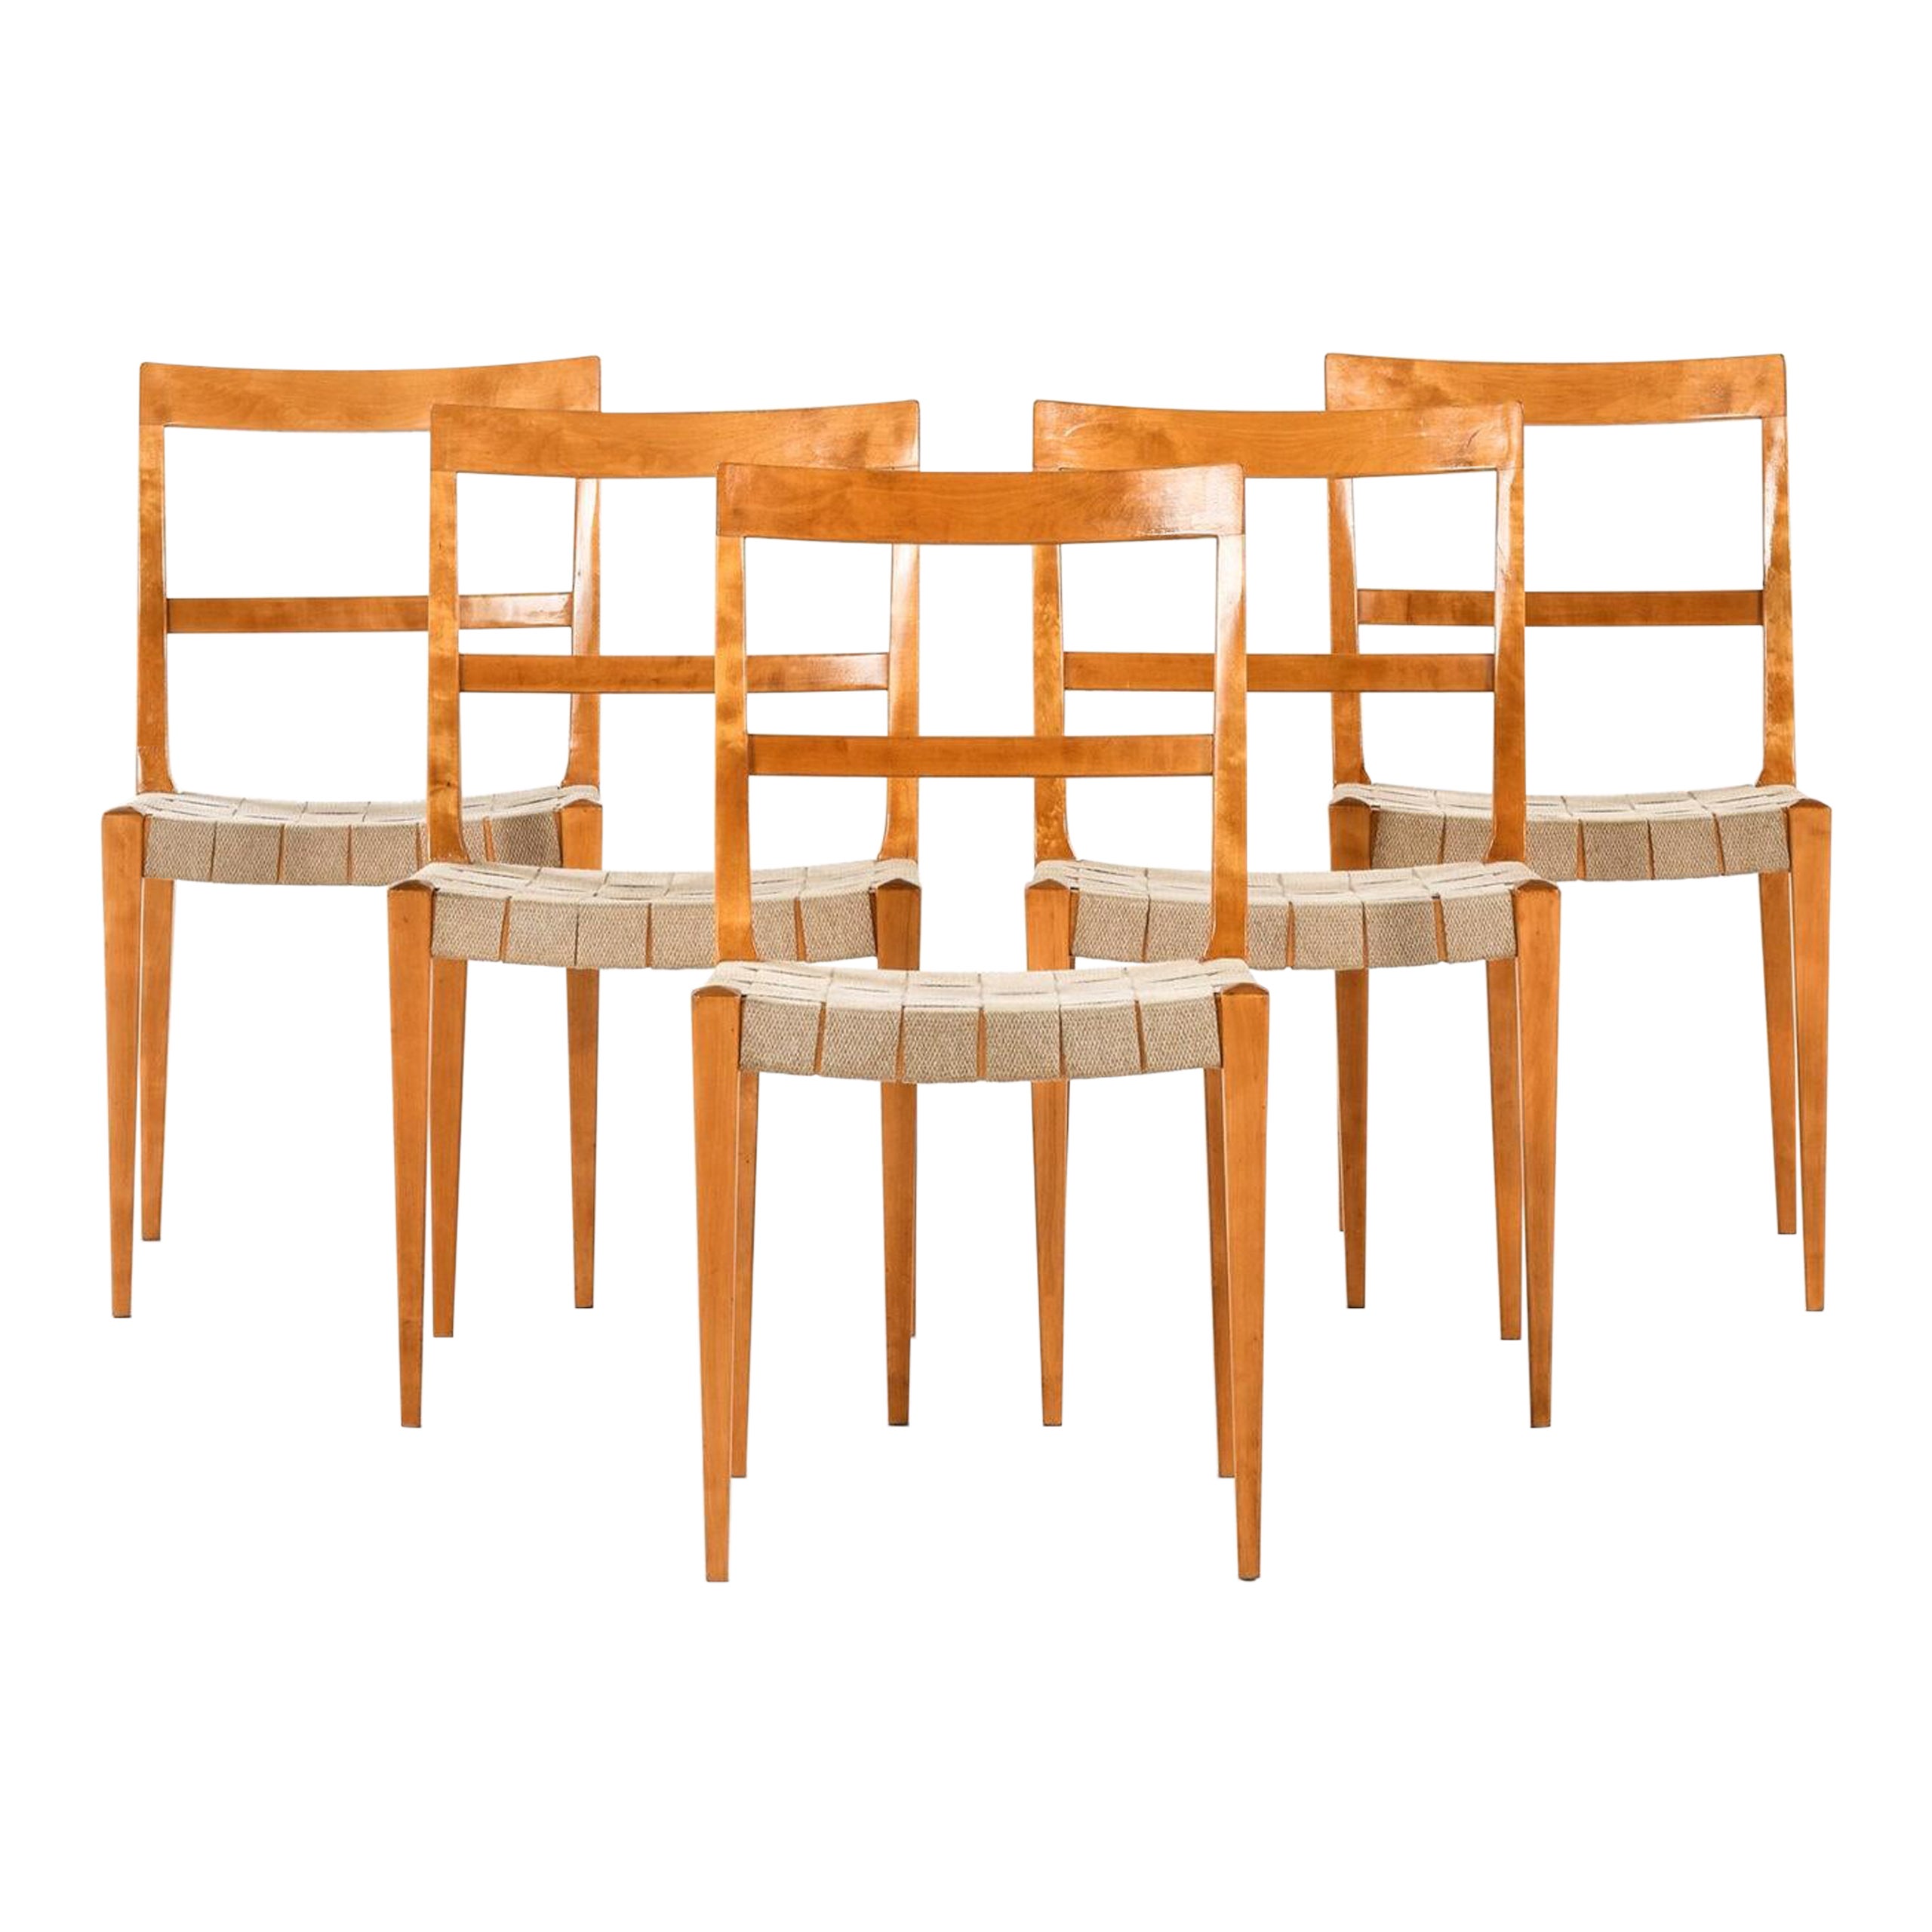 Chaises de salle à manger modèle Mimat de Bruno Mathsson produites par Karl Mathsson à Vrnamo